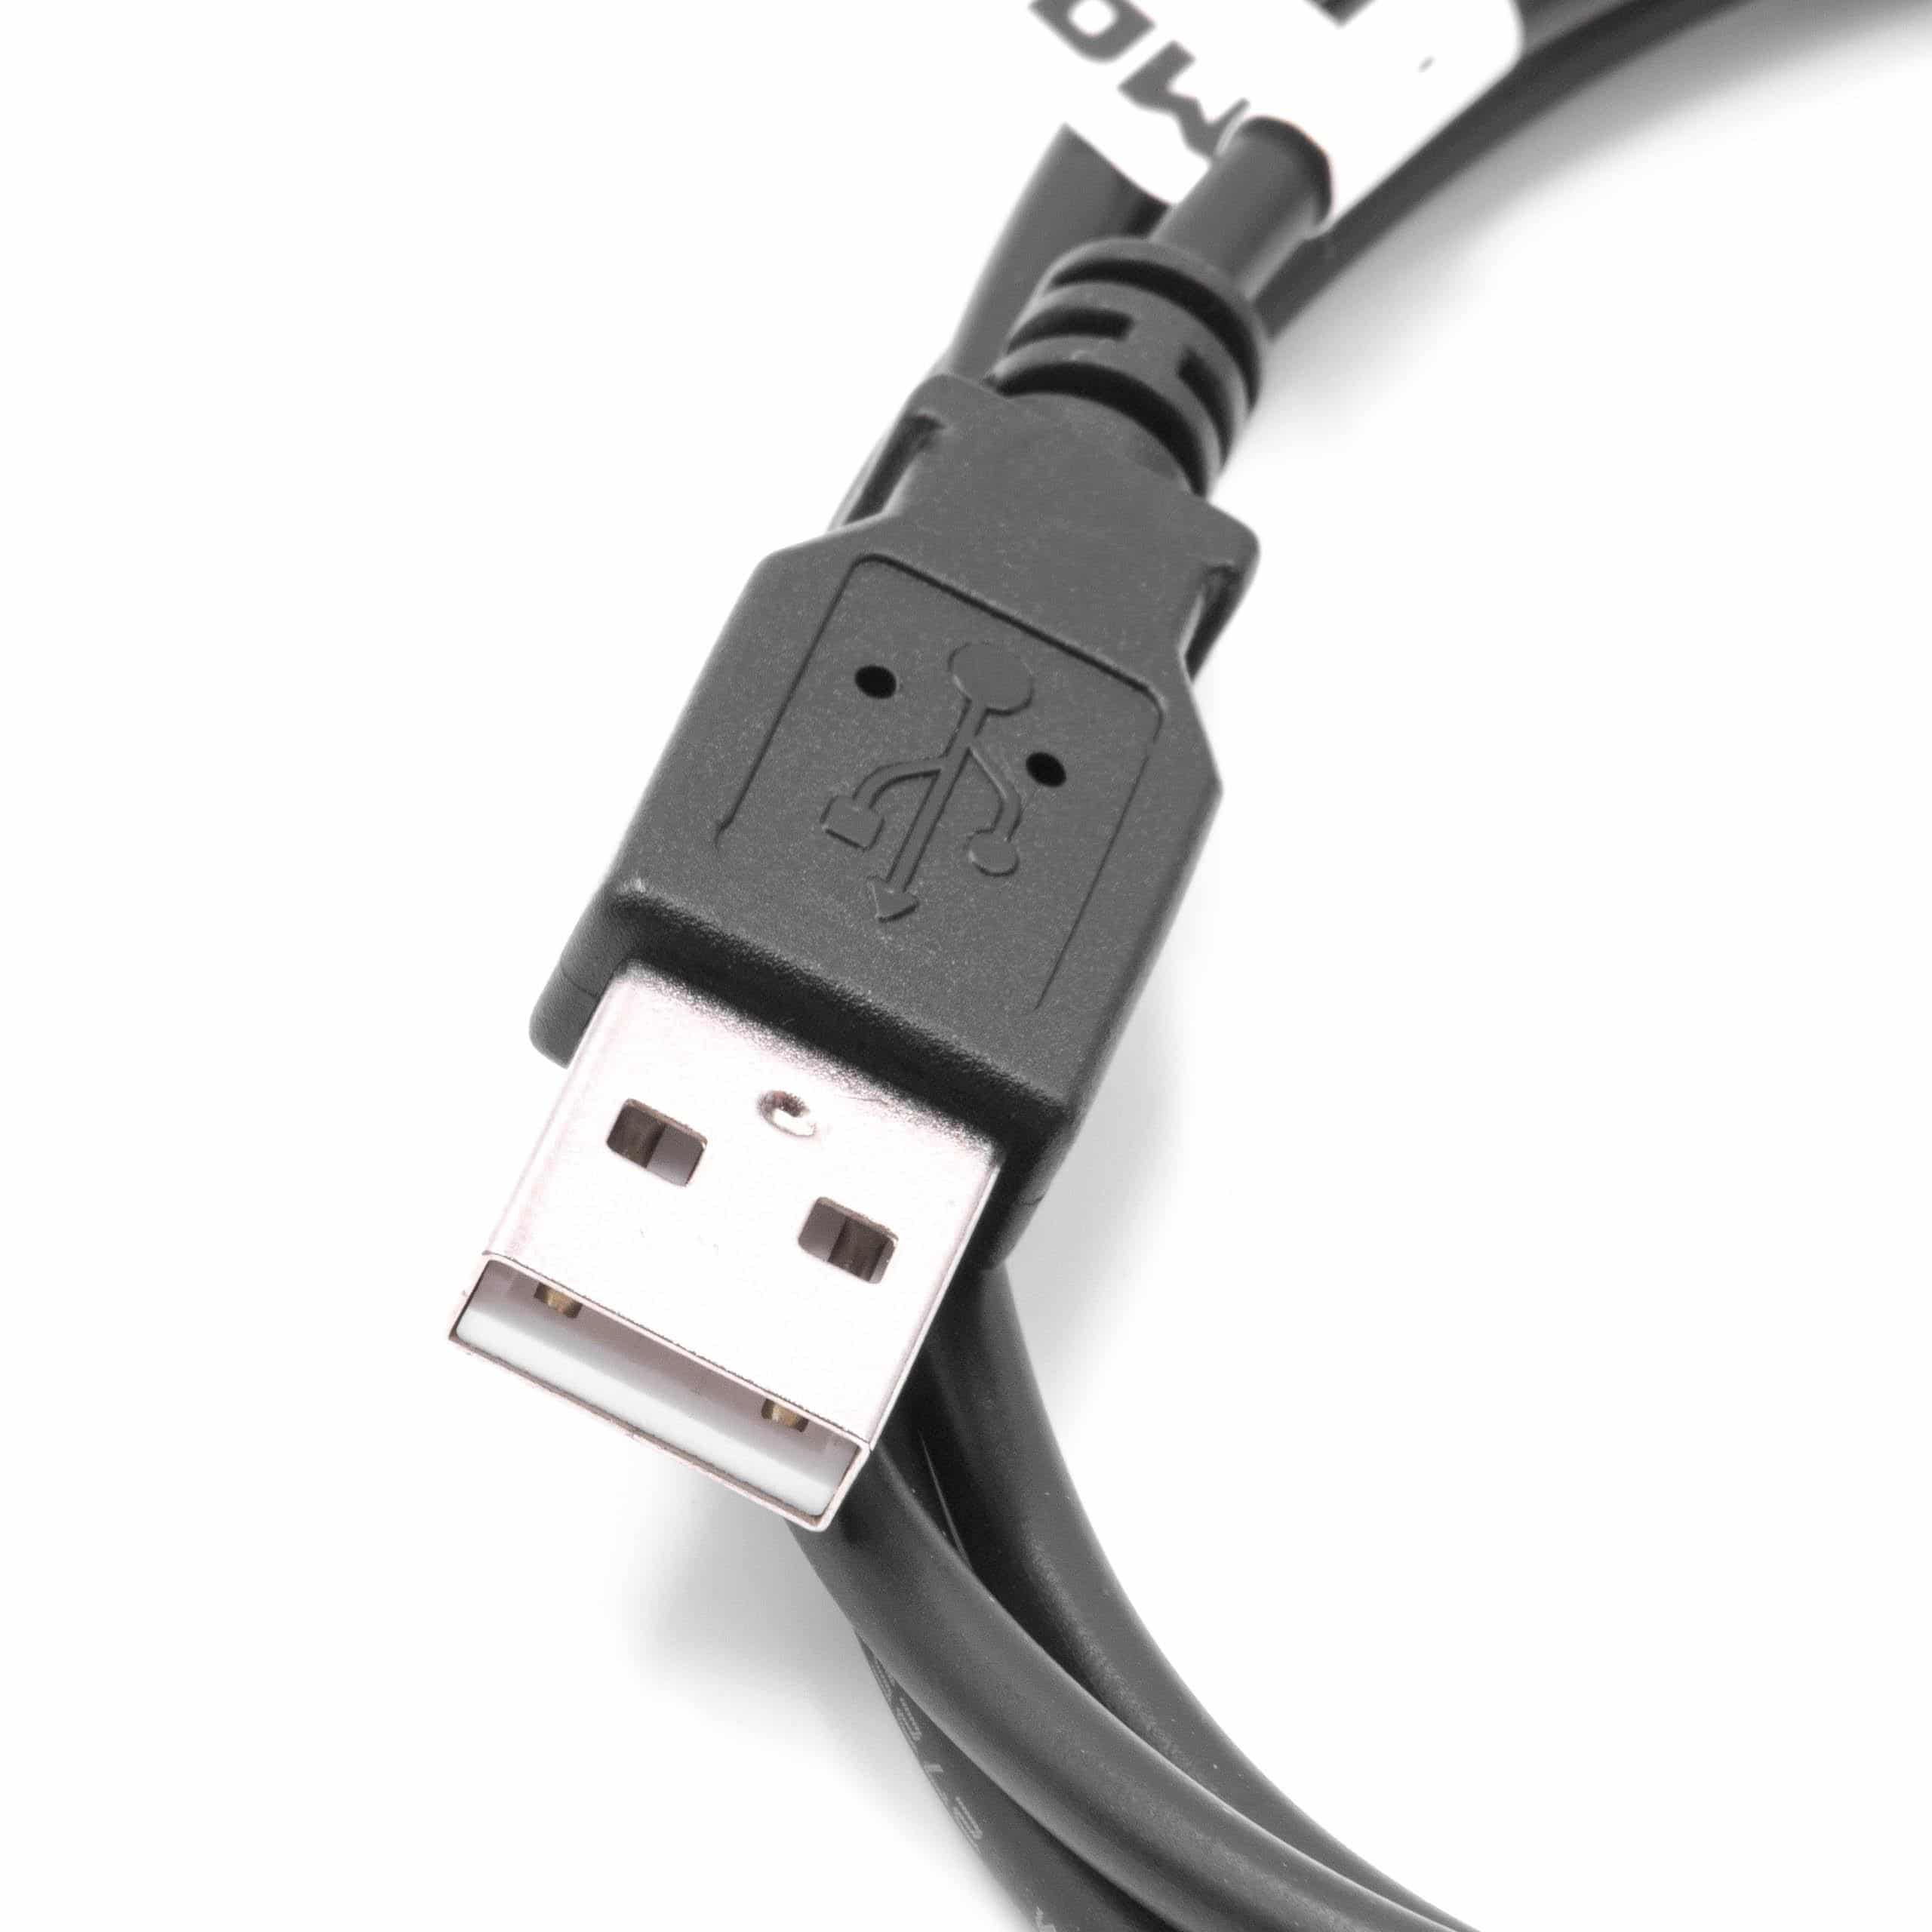 Cavo dati USB cavo di ricarica adatto a Microsoft Zune ecc., 100 cm